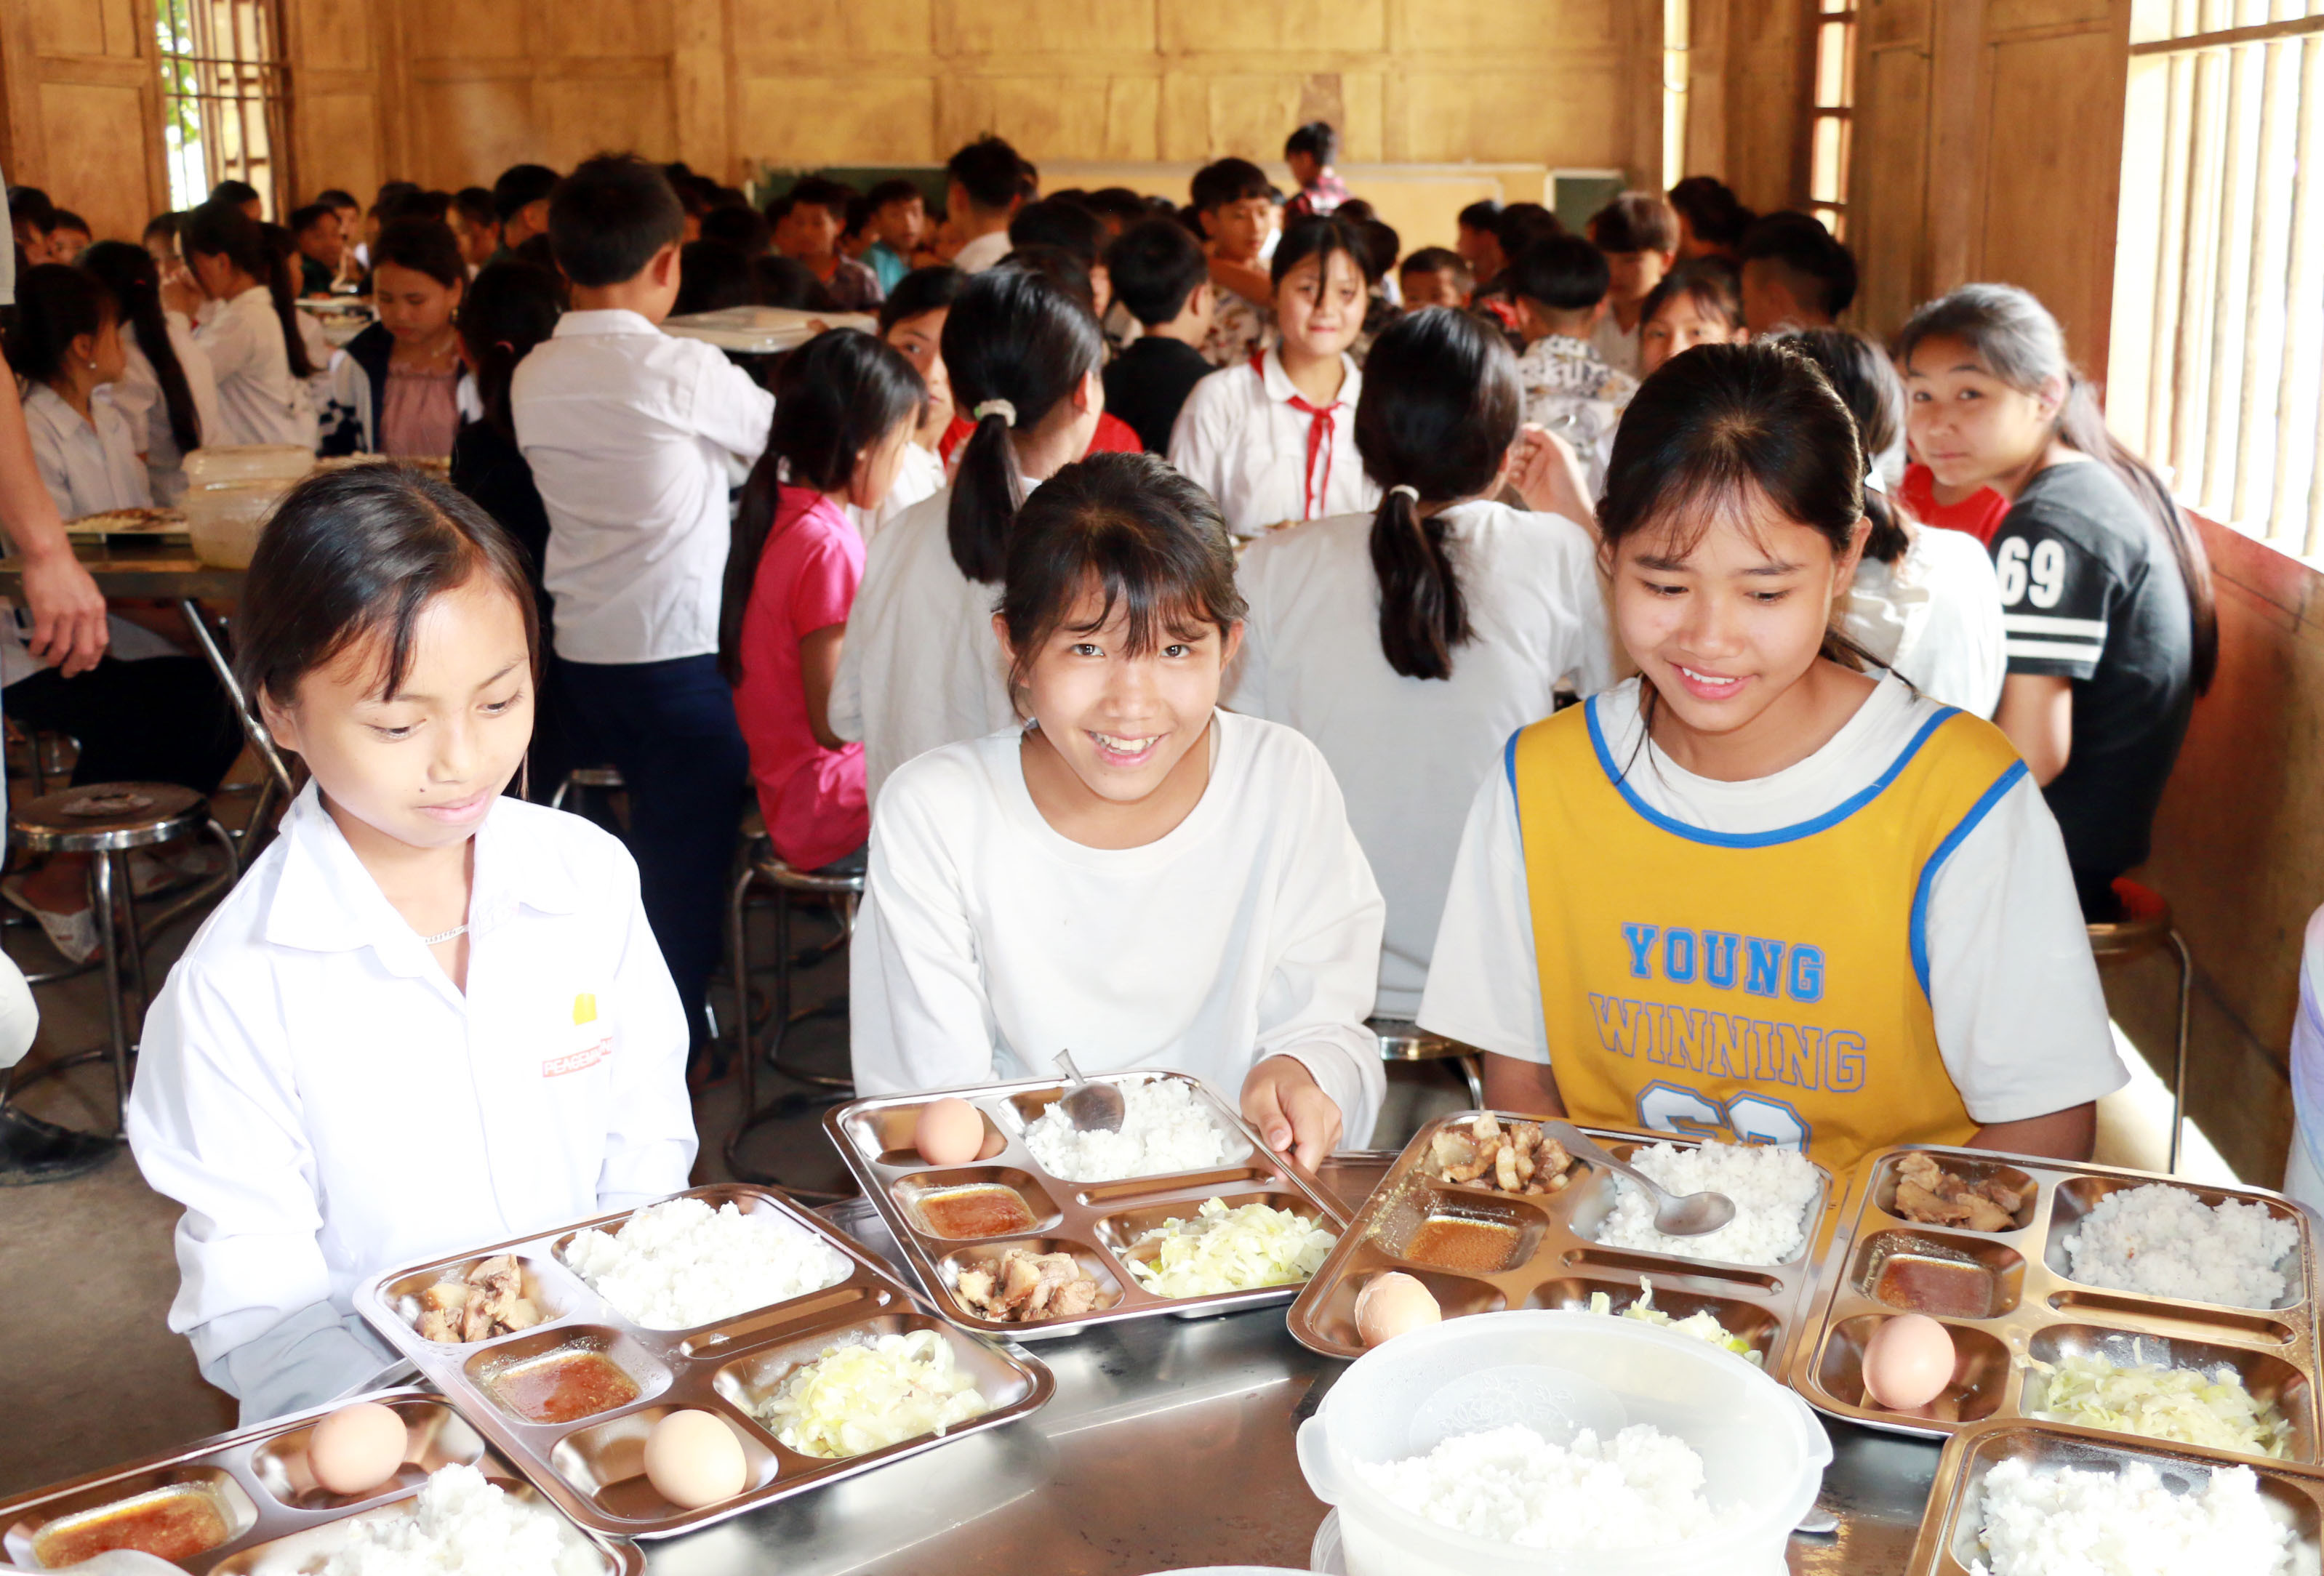 Mức hỗ trợ này dẫu chưa phải là nhiều nhưng những năm qua bằng nỗ lực của các nhà trường, hơn 11.000 học sinh là con em đồng bào dân tộc thiểu số ở Nghệ An đã được chăm lo đầy đủ.